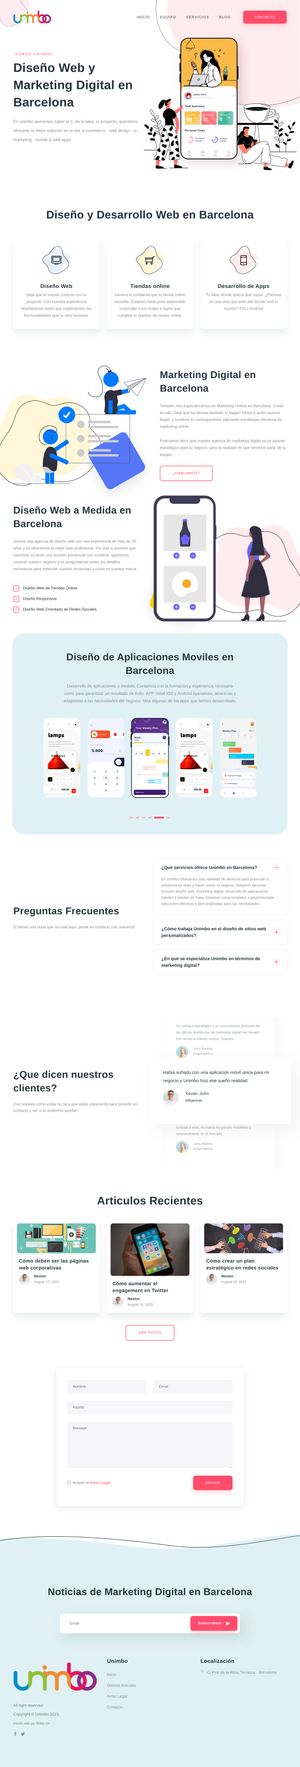 Ejemplo de diseño web completo en Alcobendas: Muestra la página web profesional que ha diseñado Ridaly para unimbo